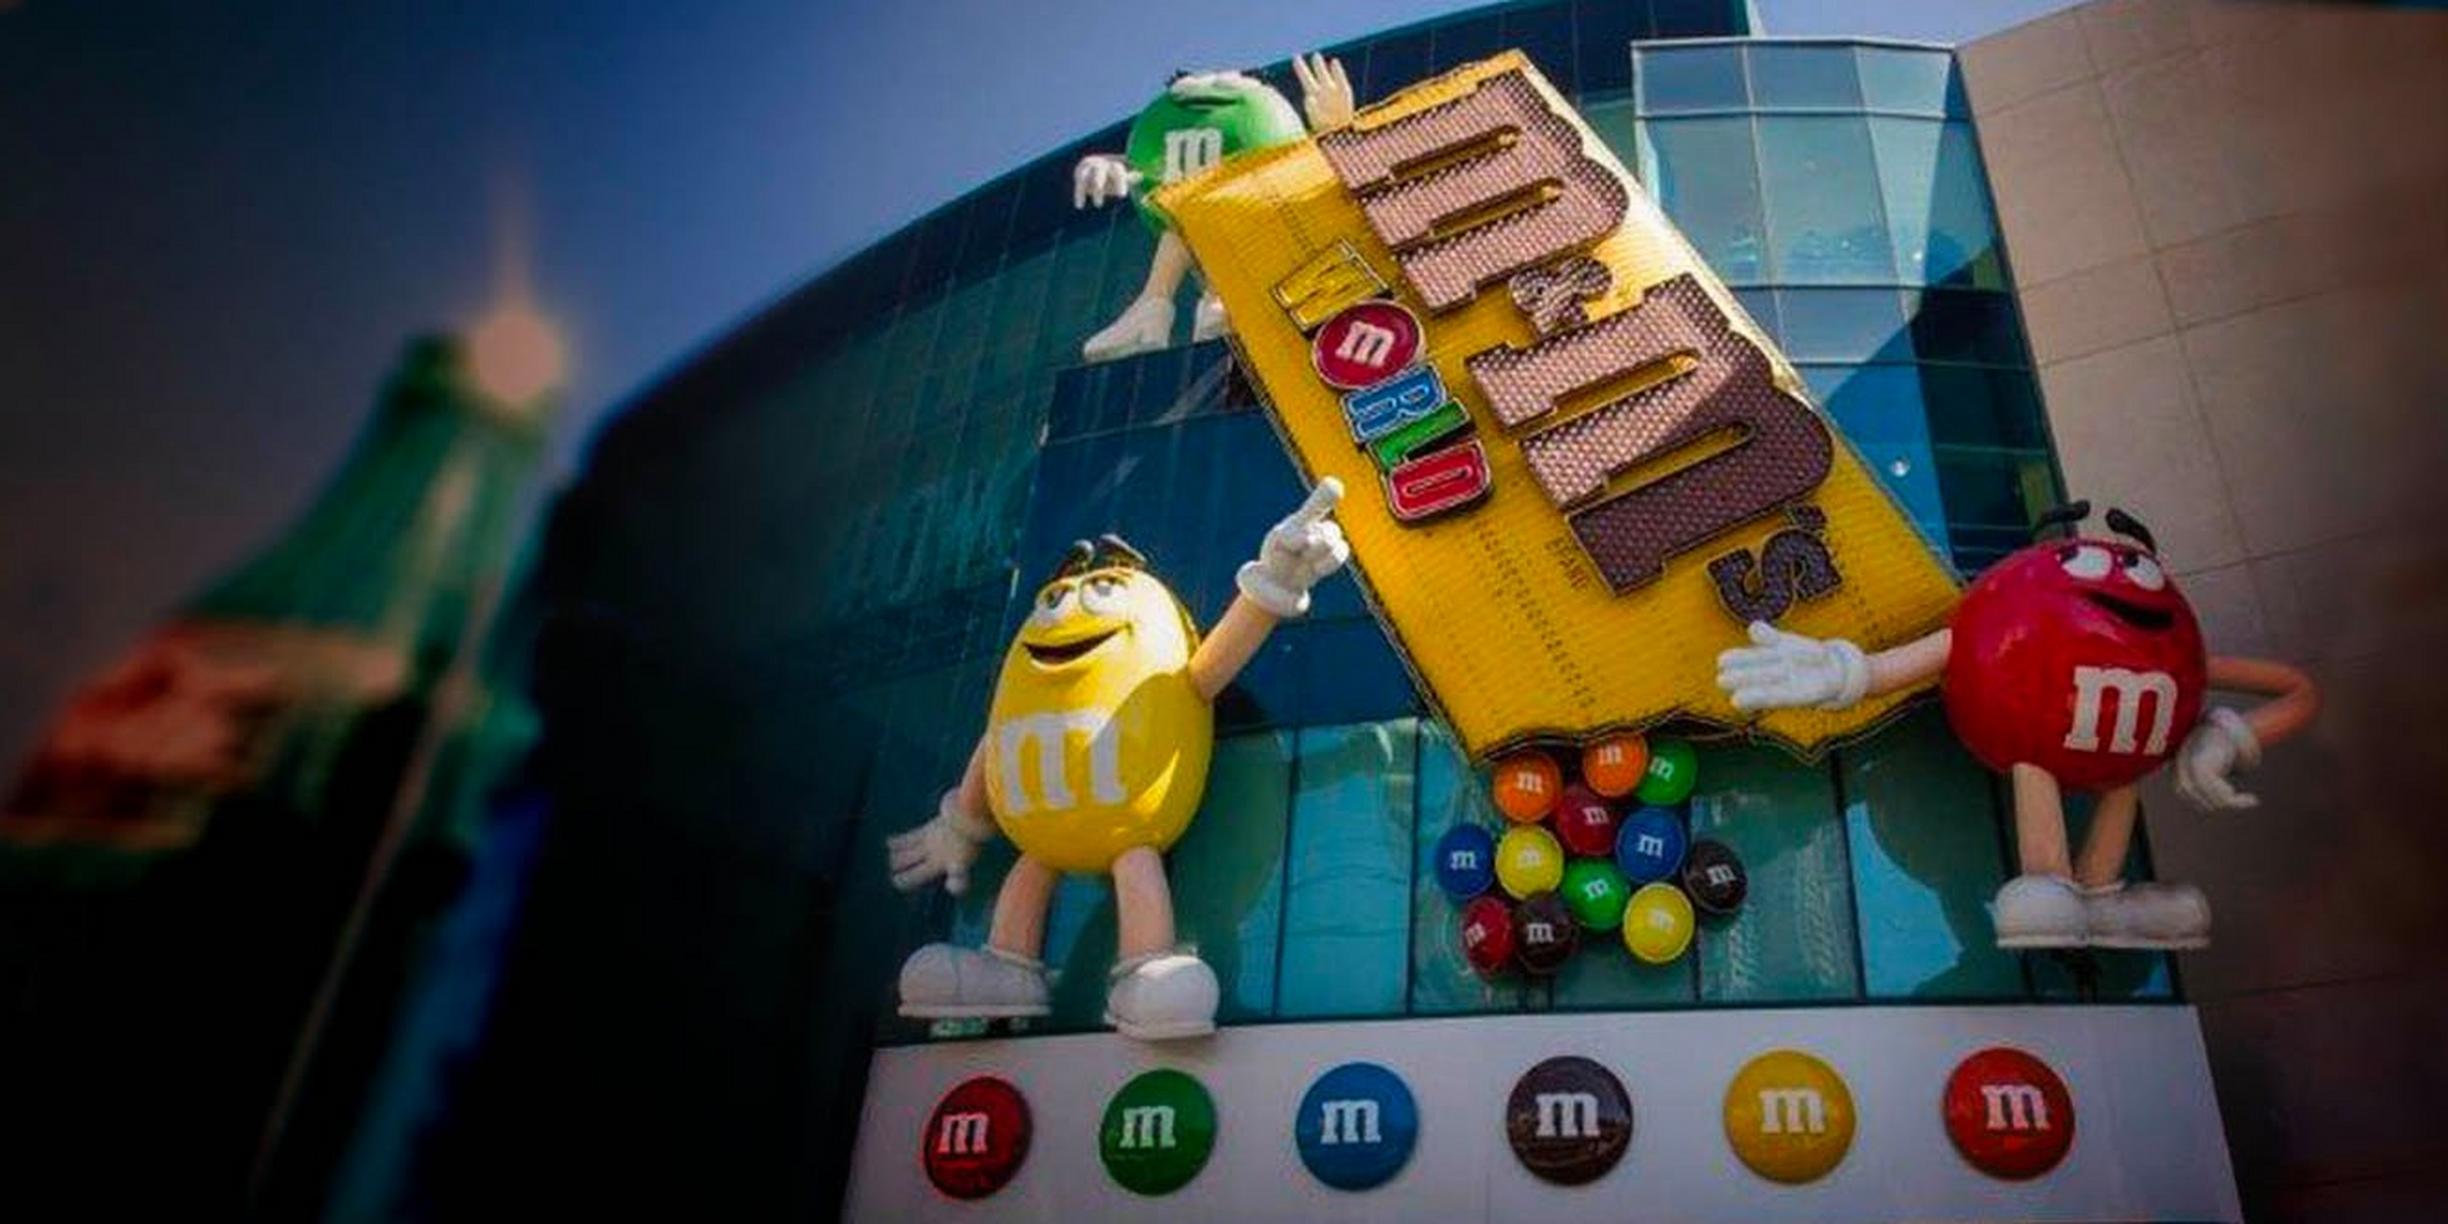 M&Ms World - World's Biggest Candy Wall!!! - Las Vegas NV USA